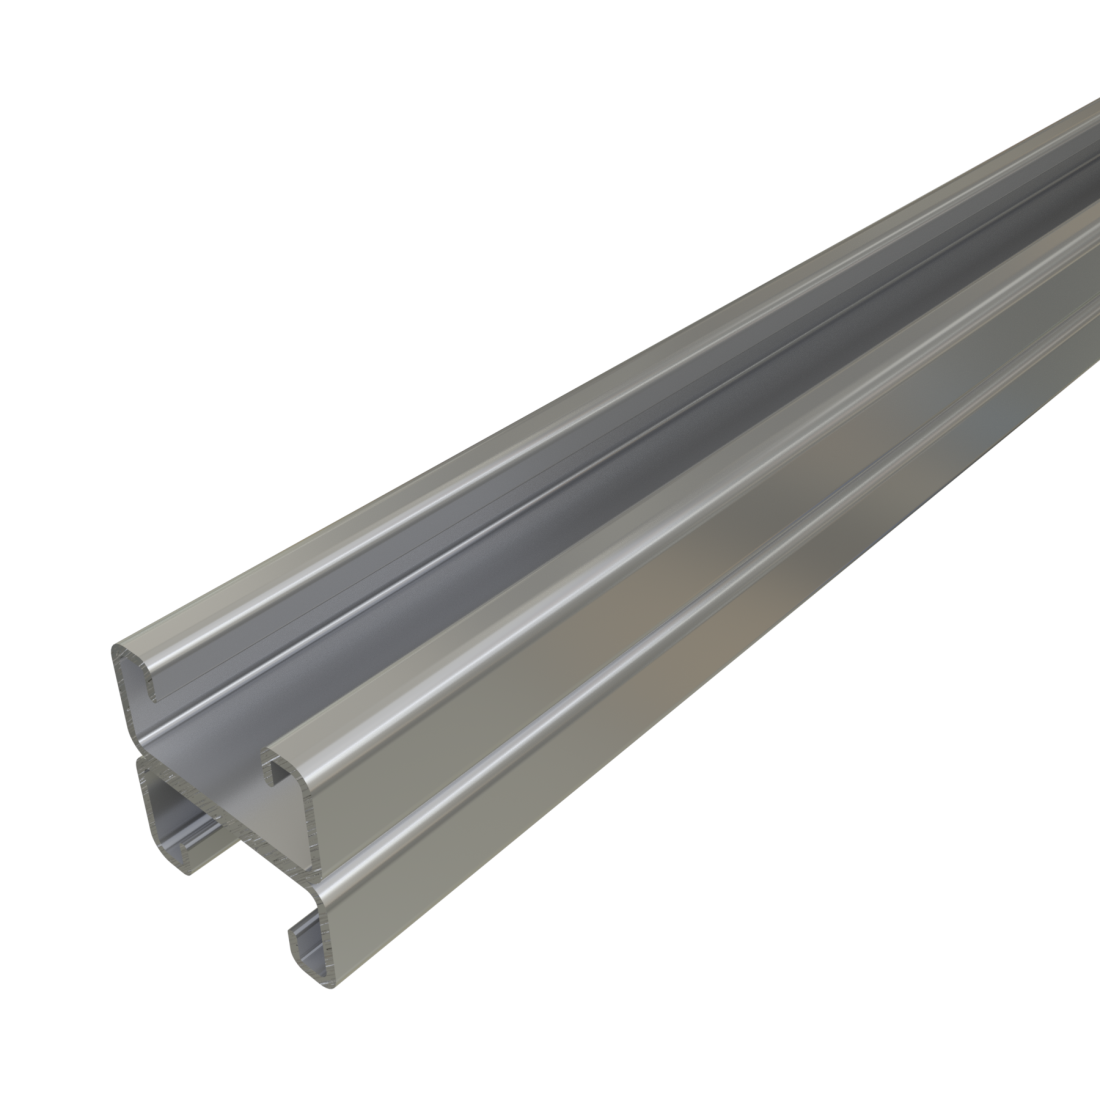 Unistrut P4101 - 1-5/8" x 1-5/8", 14 Gauge Back-to-Back Metal Framing Strut, Solid